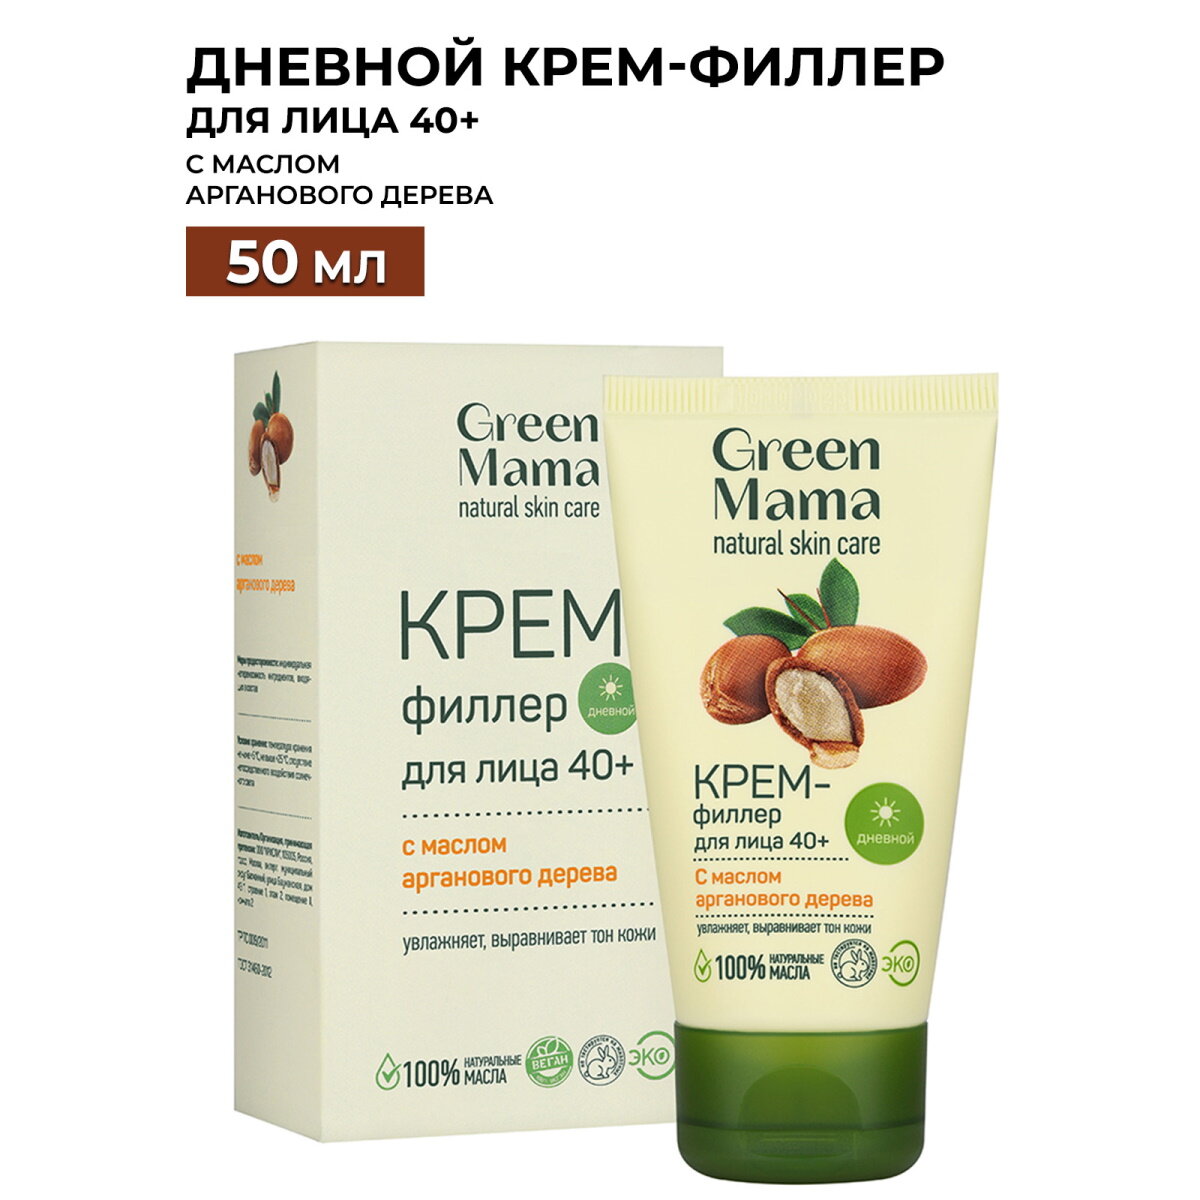 Дневной крем-филлер для лица GREEN MAMA с маслом арганового дерева 50 мл